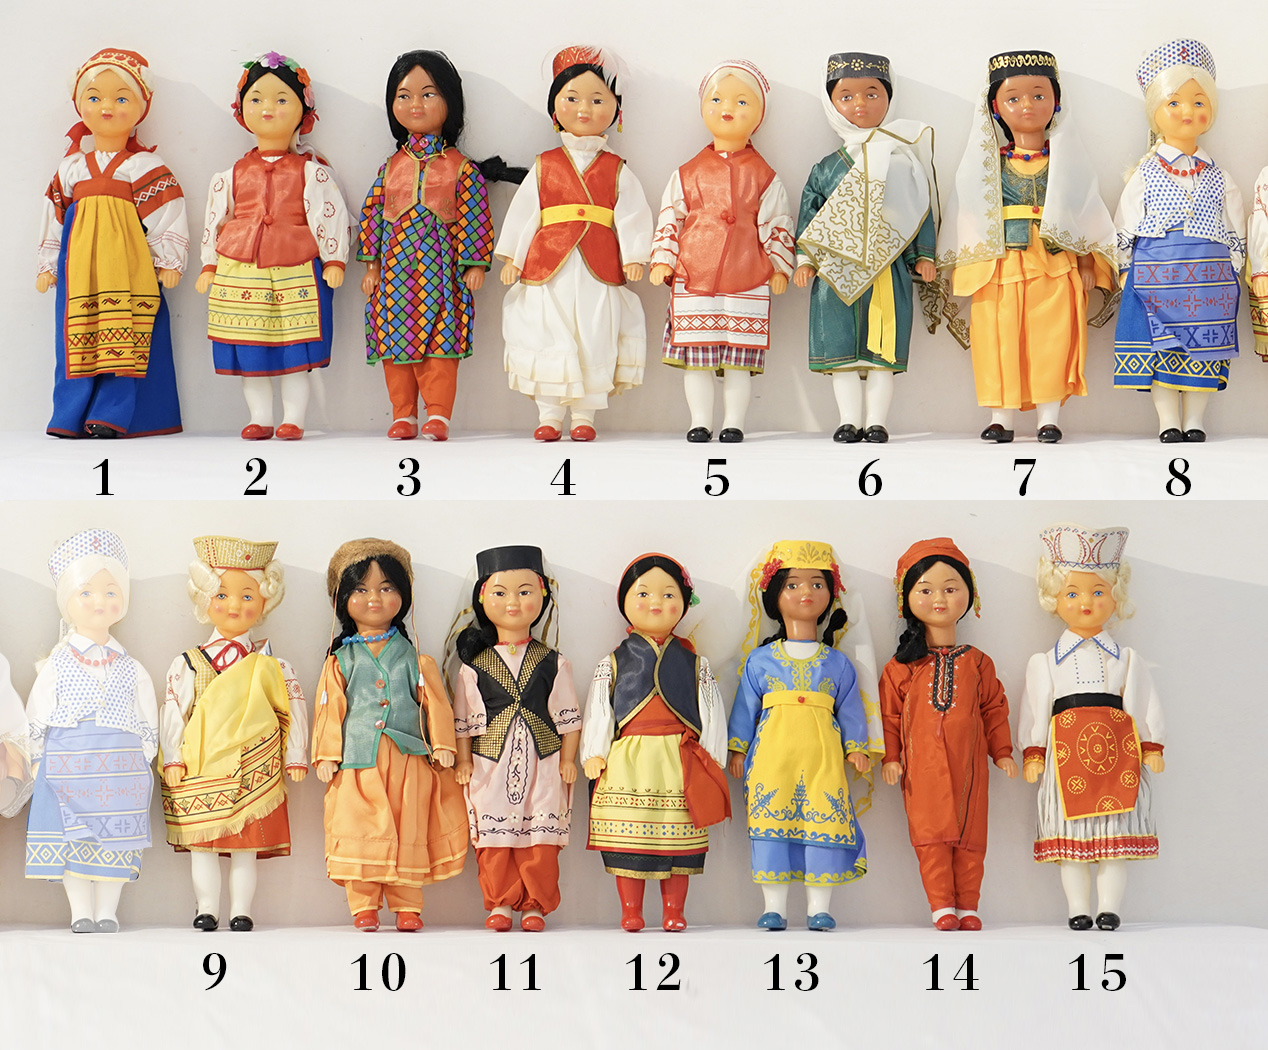 ソビエト社会主義連邦共和国時代の民族衣装人形